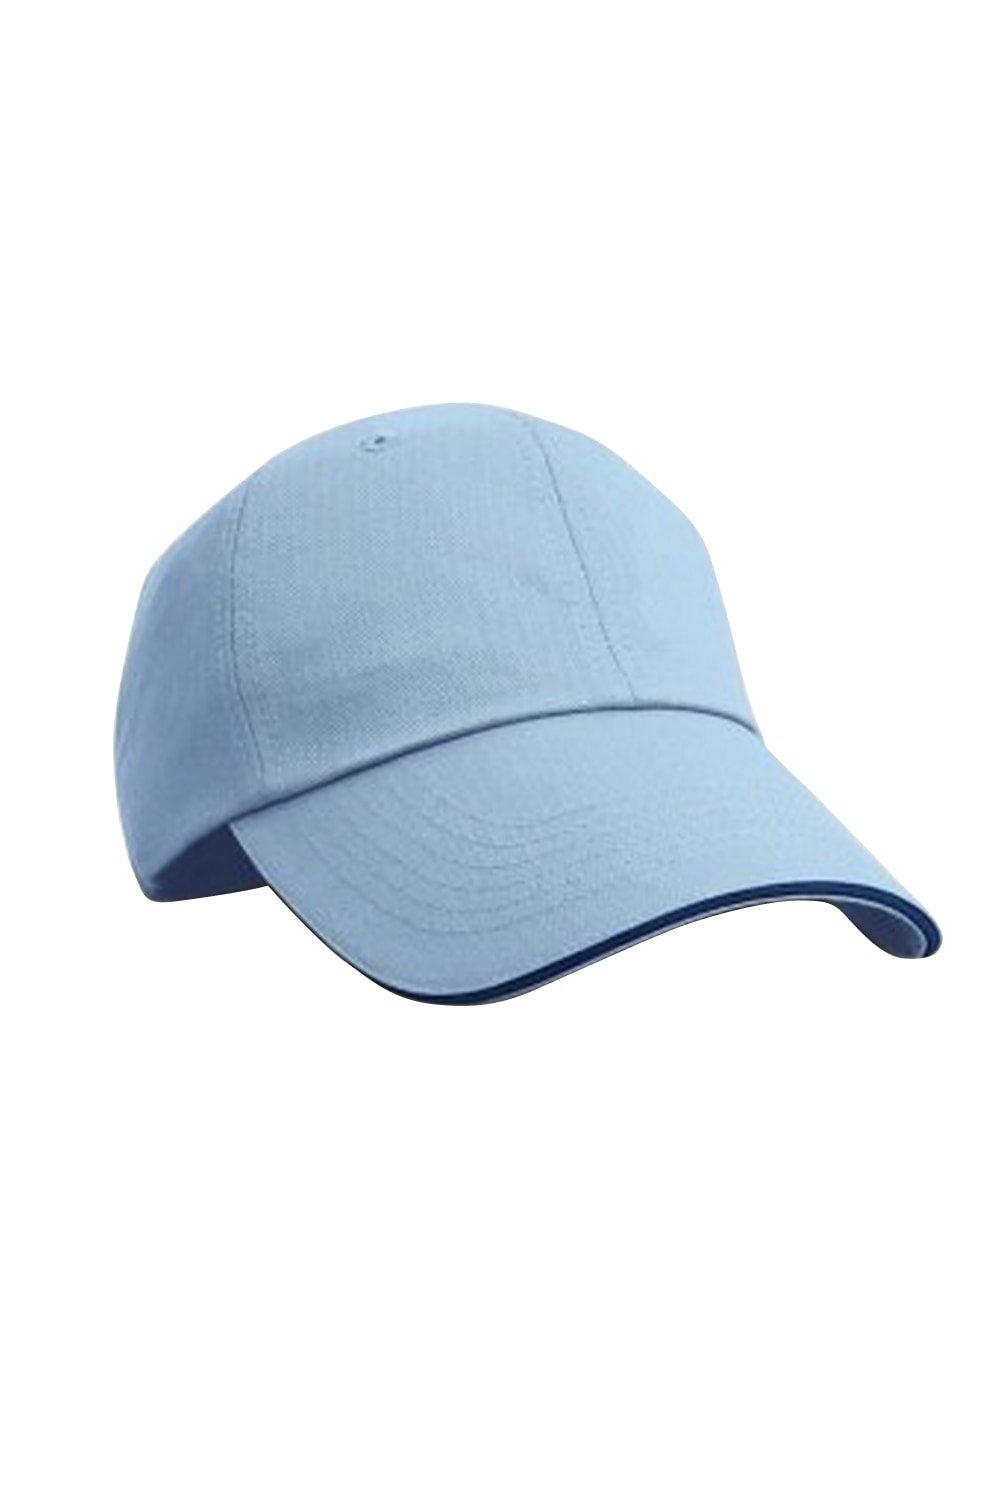 Бейсбольная кепка контрастного цвета с узором «елочка» и козырьком Result, синий